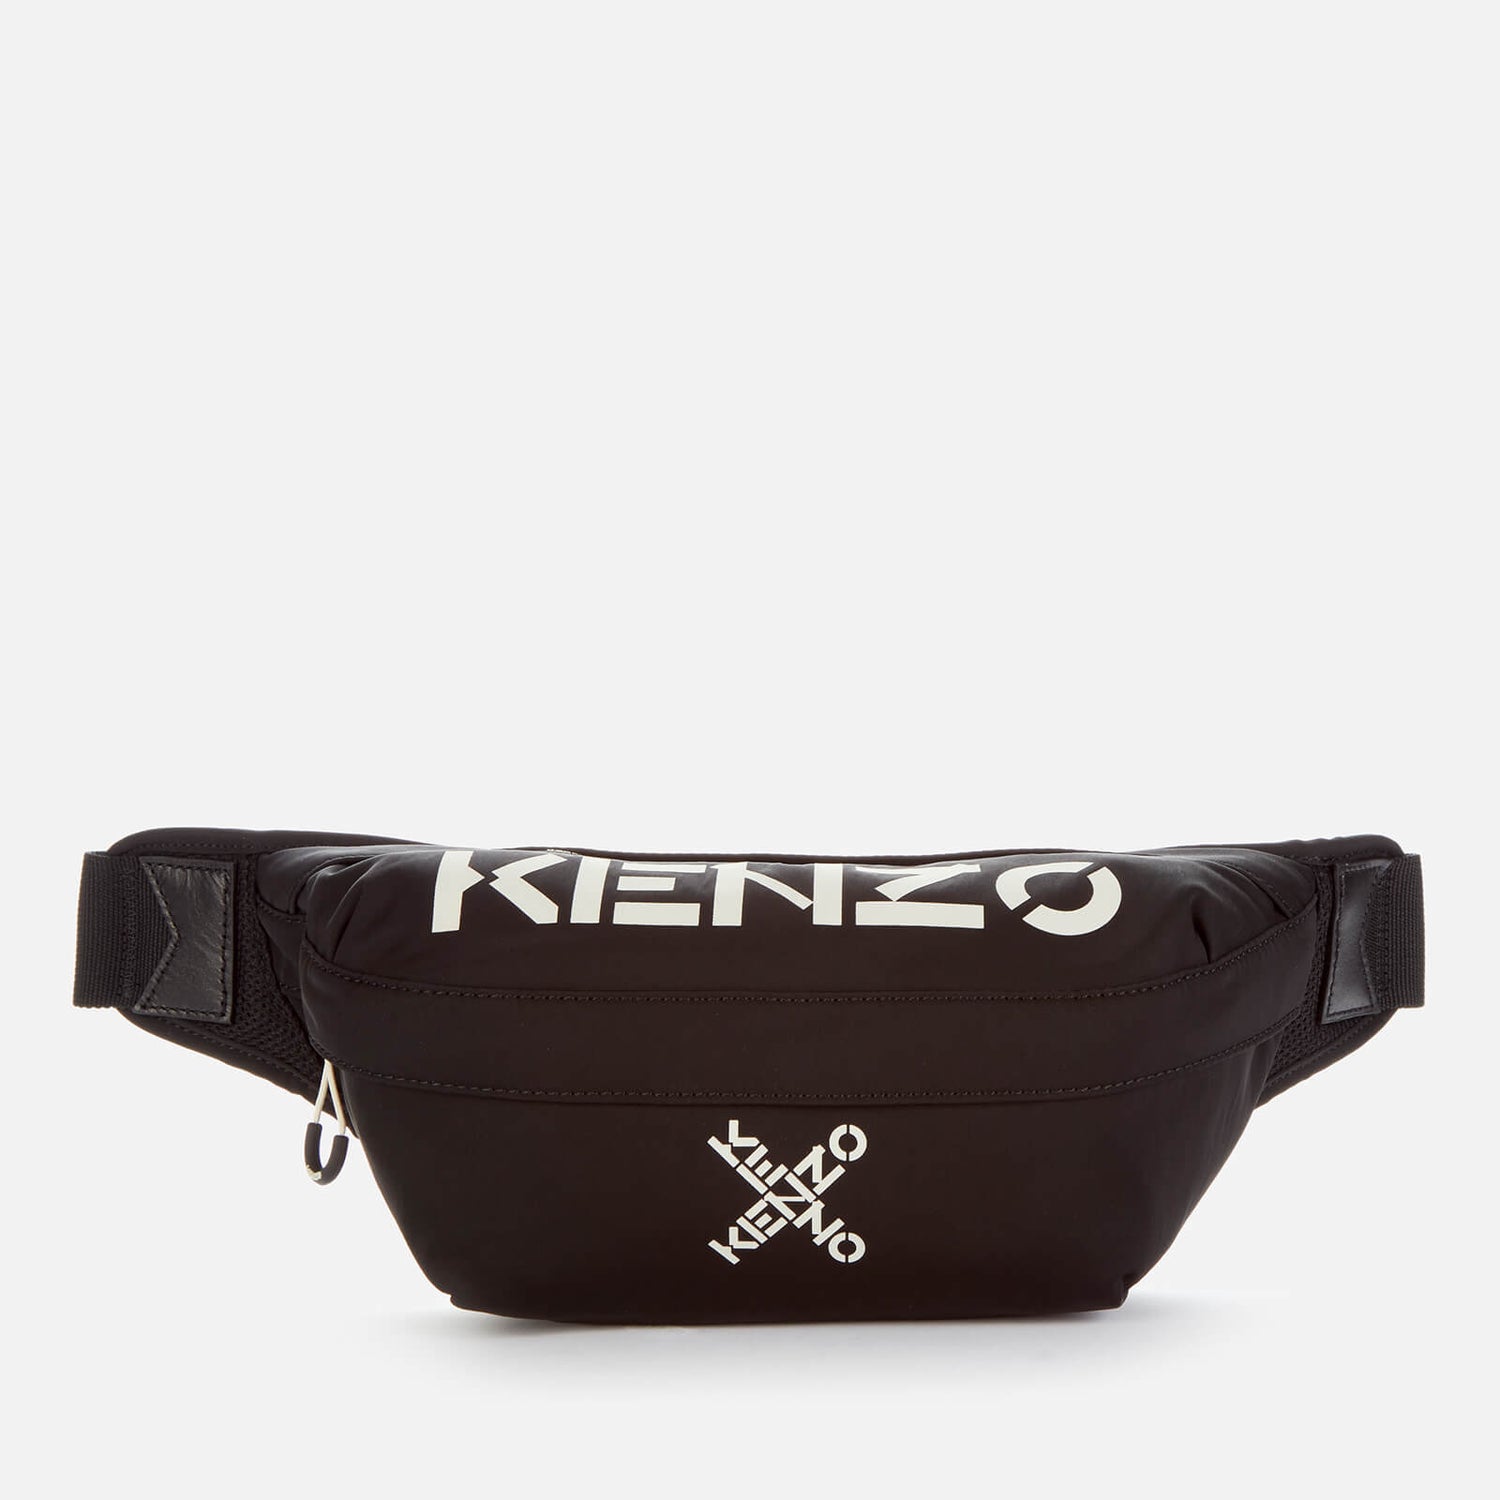 KENZO Men's Sport Belt Bag - Black - Free UK Delivery Available